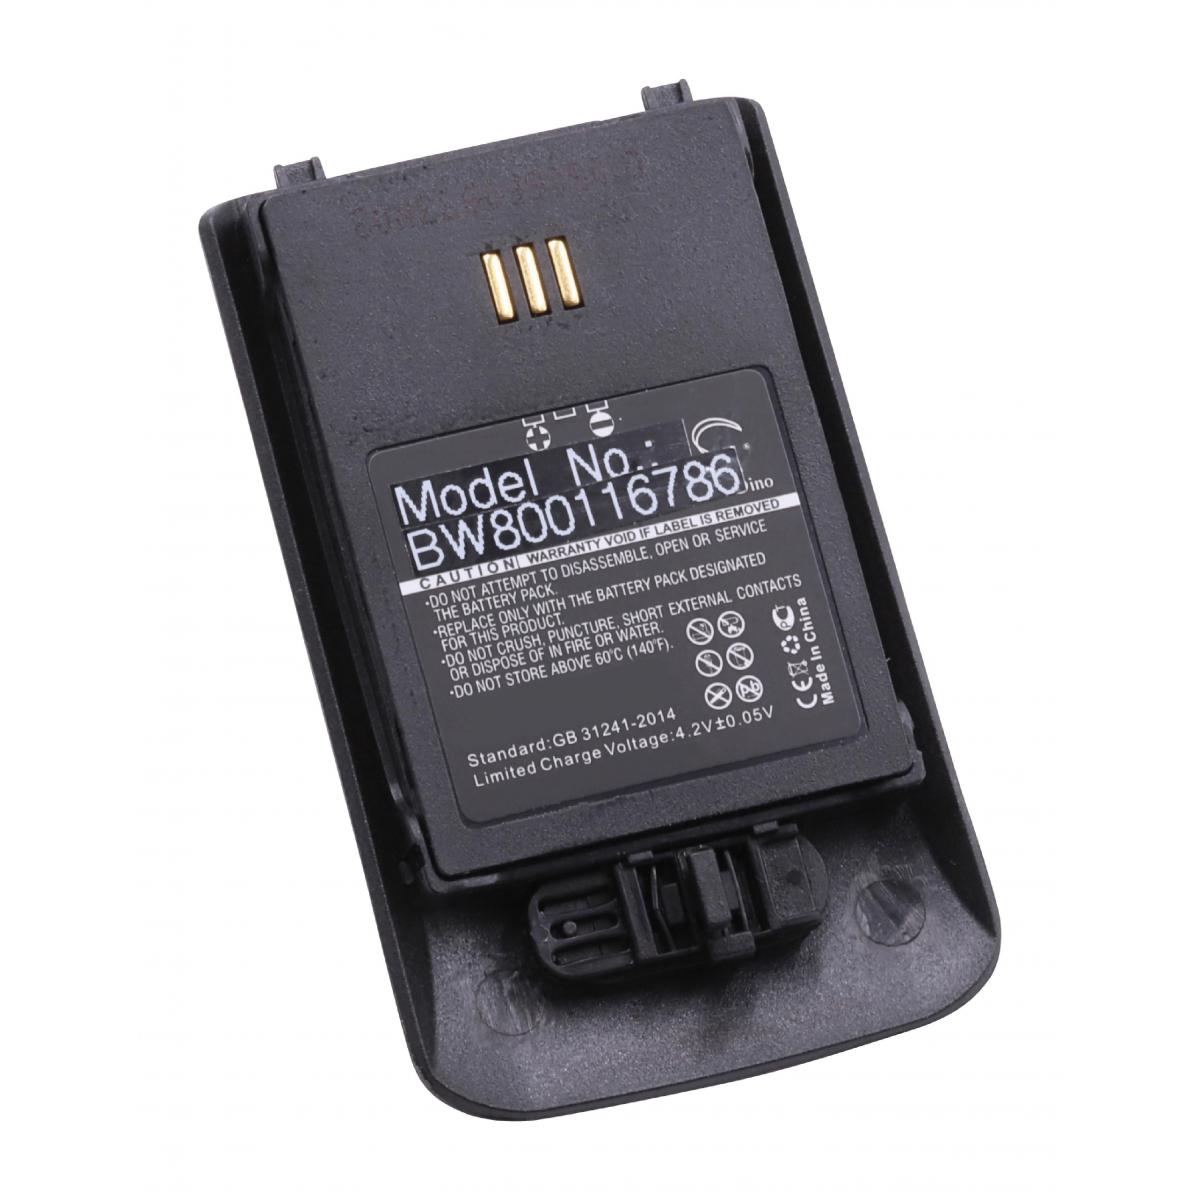 Vhbw - vhbw Li-Ion batterie 930mAh (3.7V) pour combiné téléphonique téléphone fixe Ascom 660190/R2B, 600190/2C, Avaya 0486515, 660190/R1A, 660190/R2B - Batterie téléphone